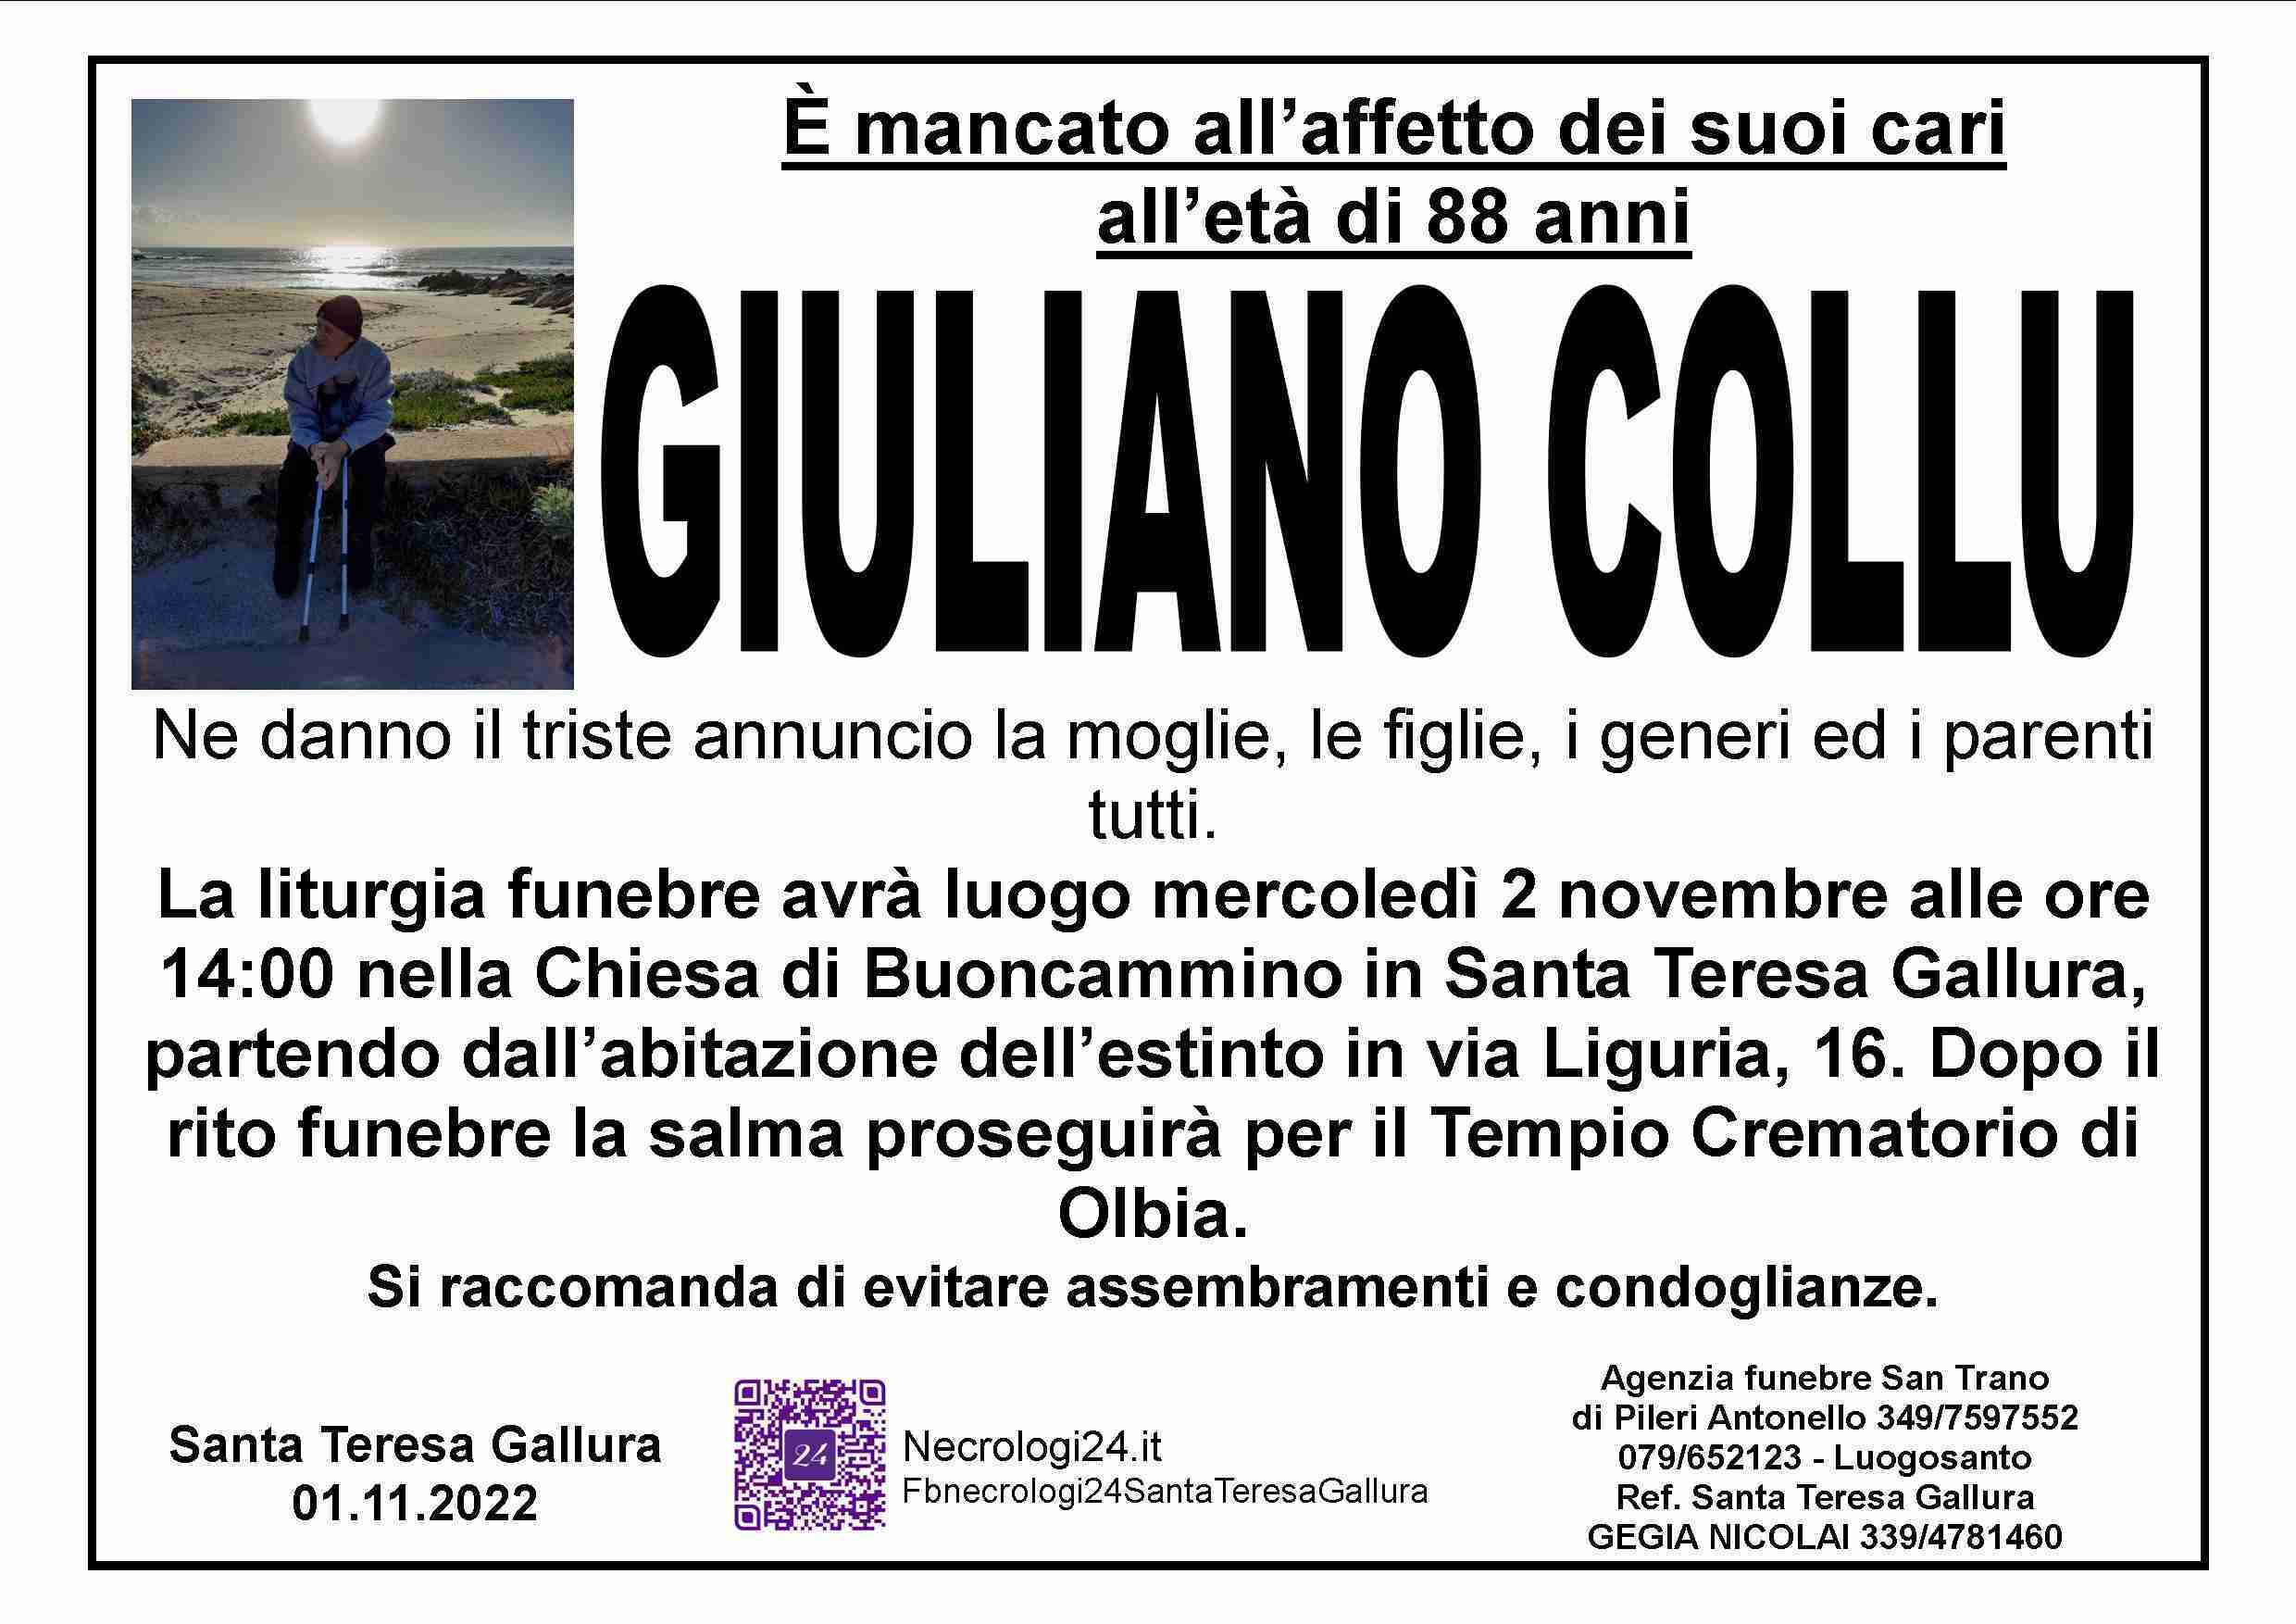 Giuliano Collu